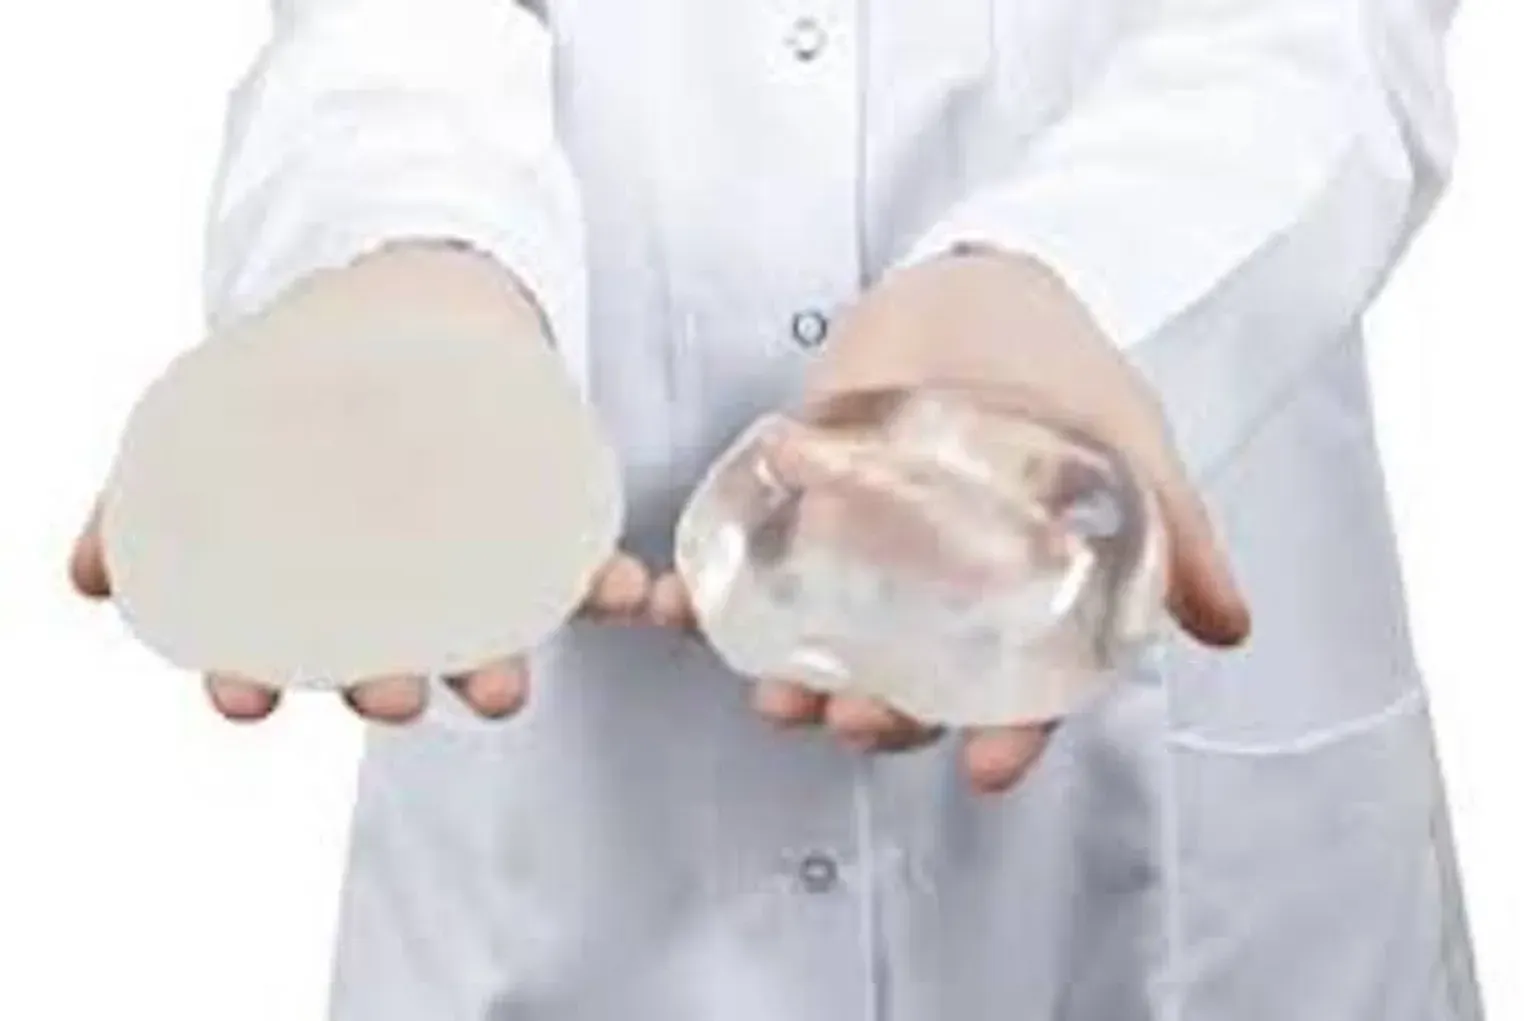 Dr. Ingram Gummy Bear Implants